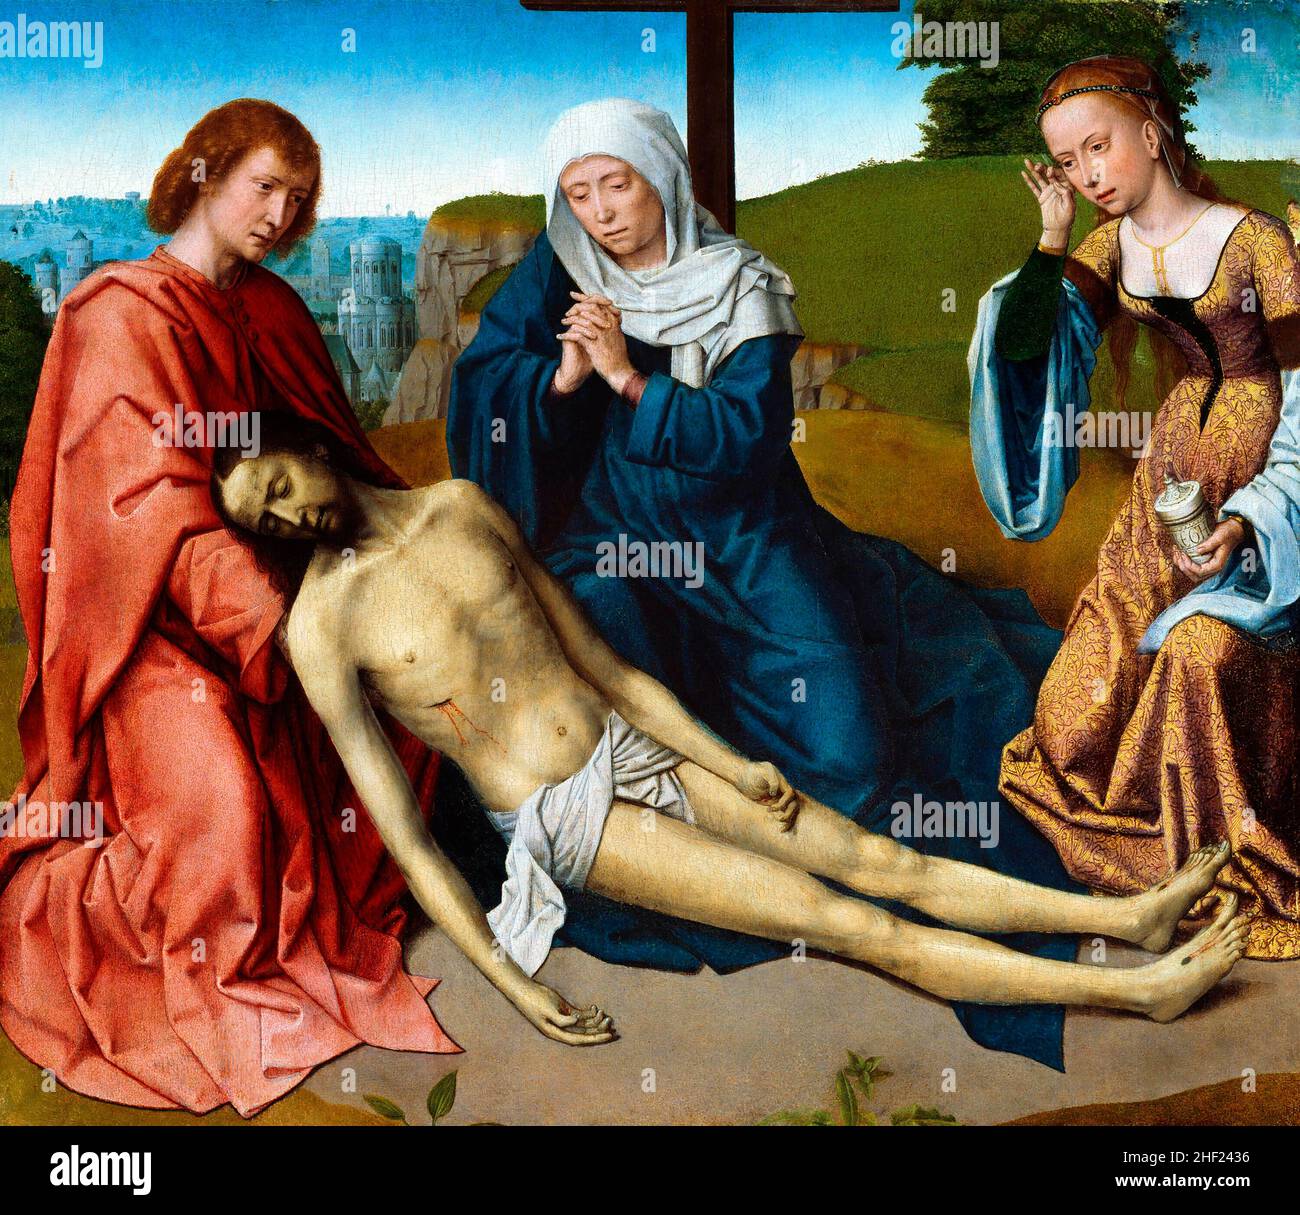 La lamentation sur le corps du Christ par Gerard David (1460-1523), huile sur panneau, c.1500 Banque D'Images